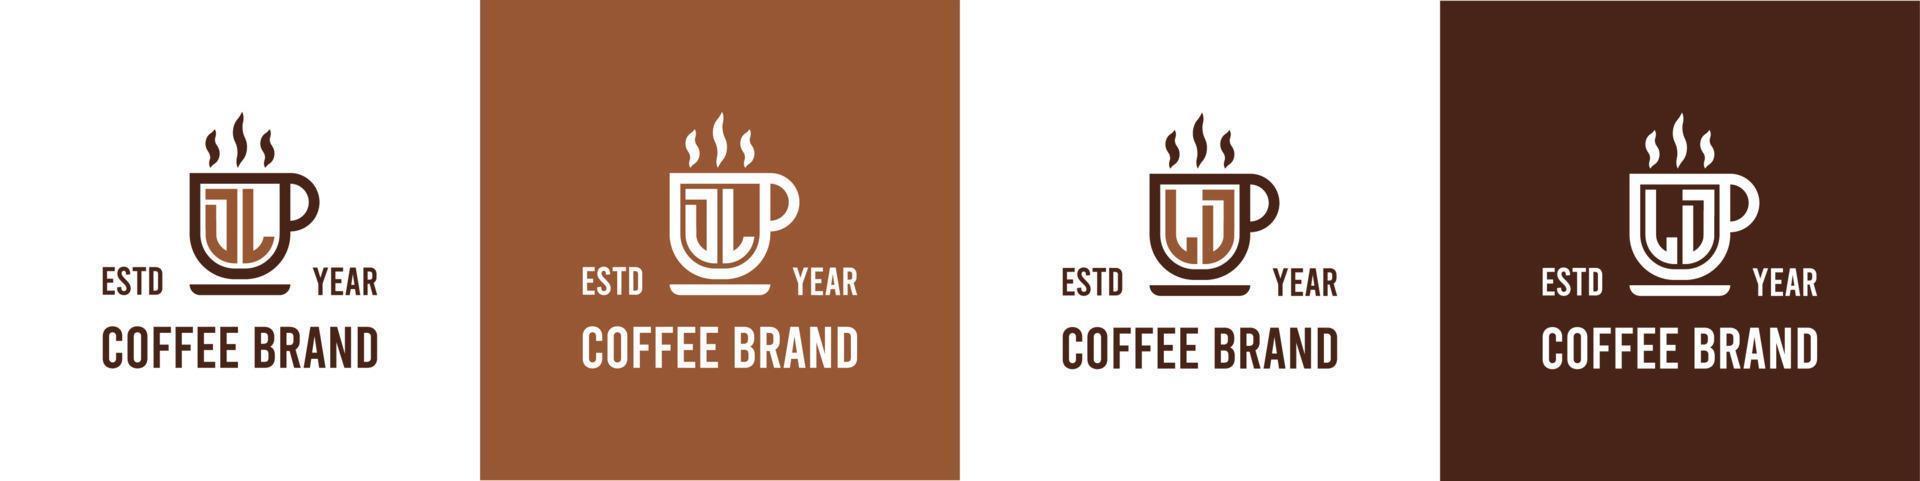 brief dl en ld koffie logo, geschikt voor ieder bedrijf verwant naar koffie, thee, of andere met dl of ld initialen. vector